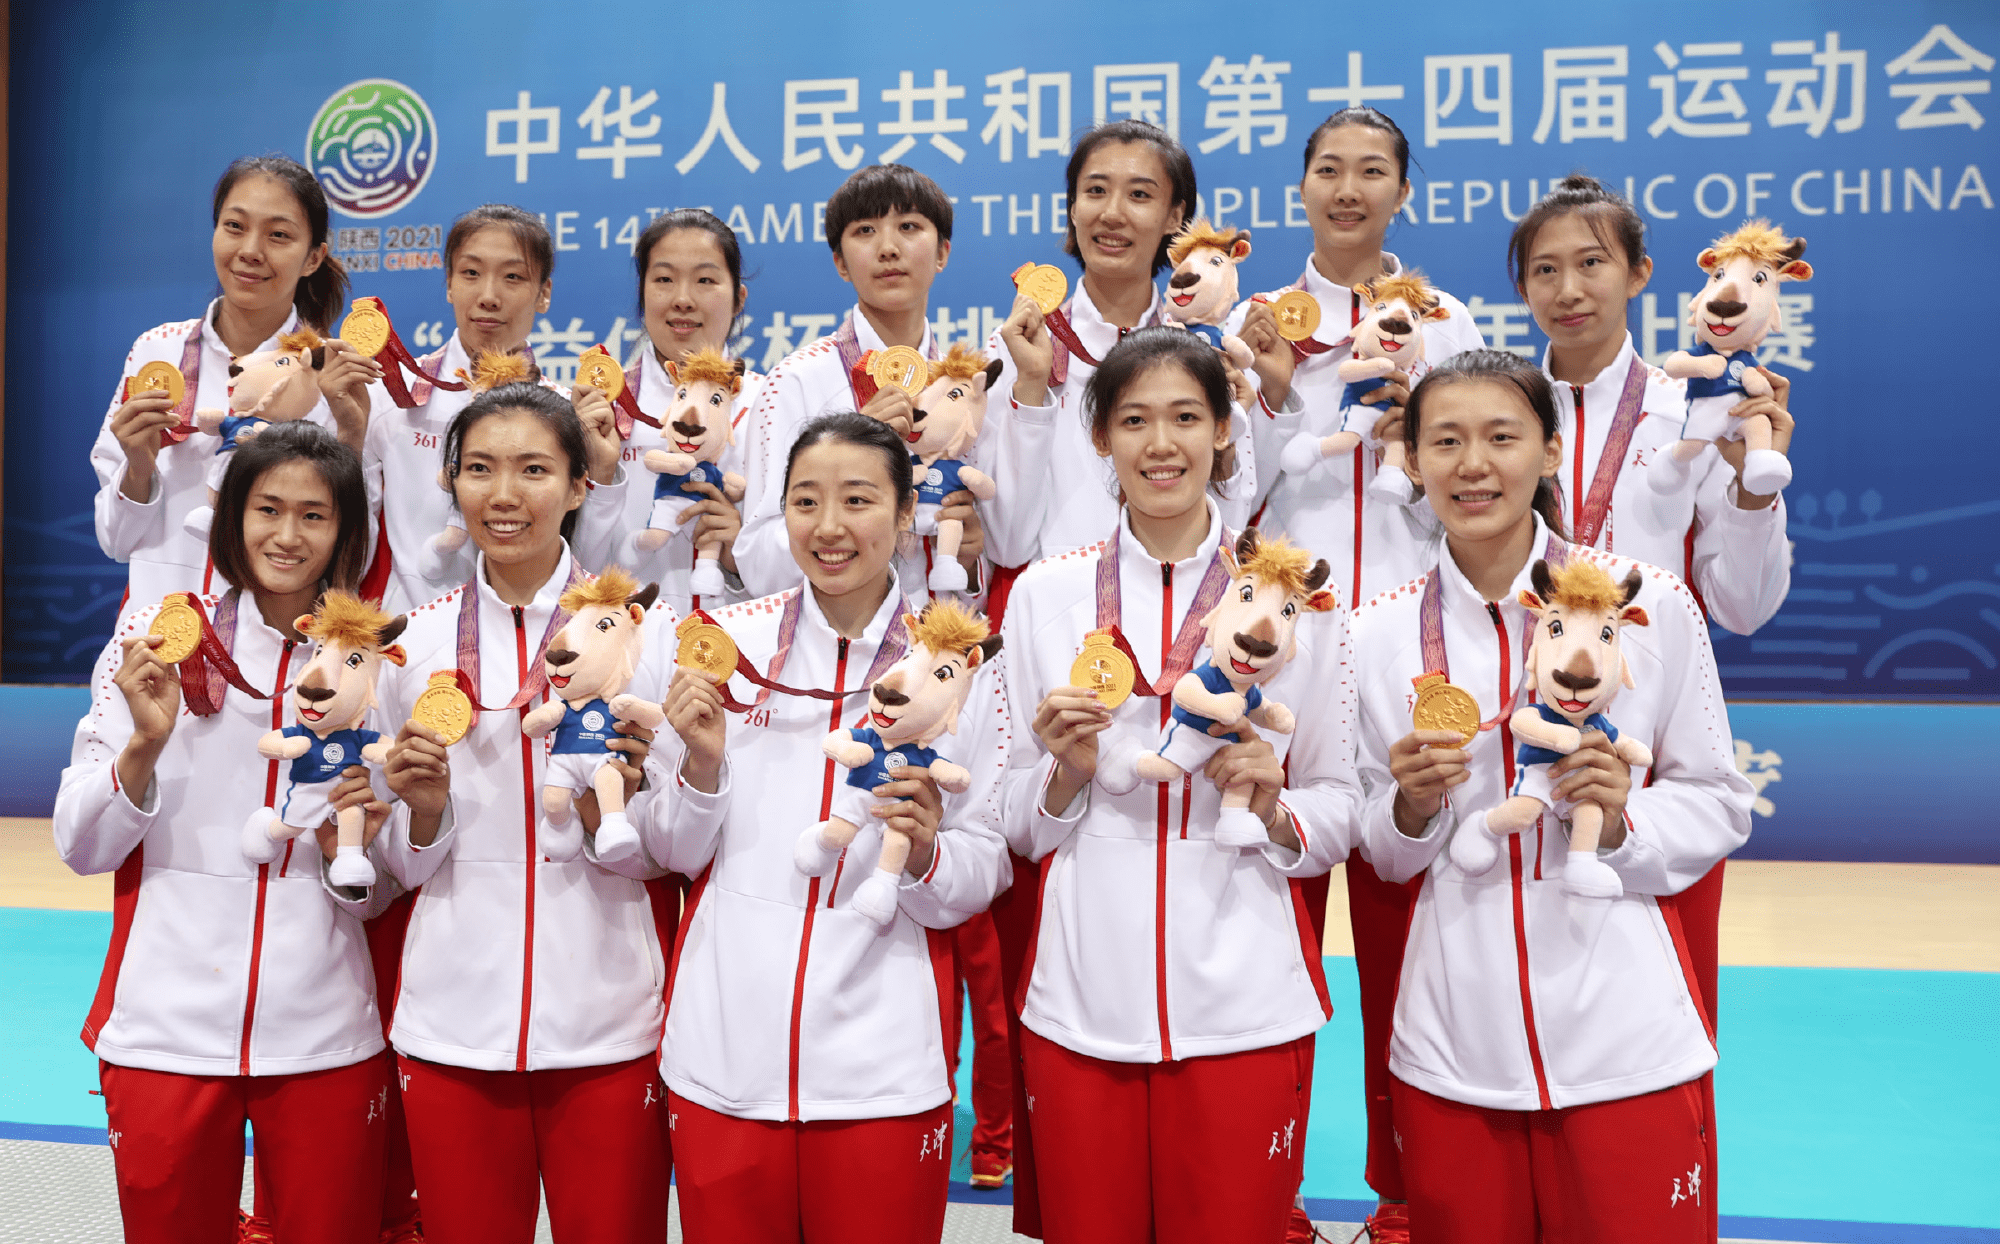 天津女排队员名单照片图片